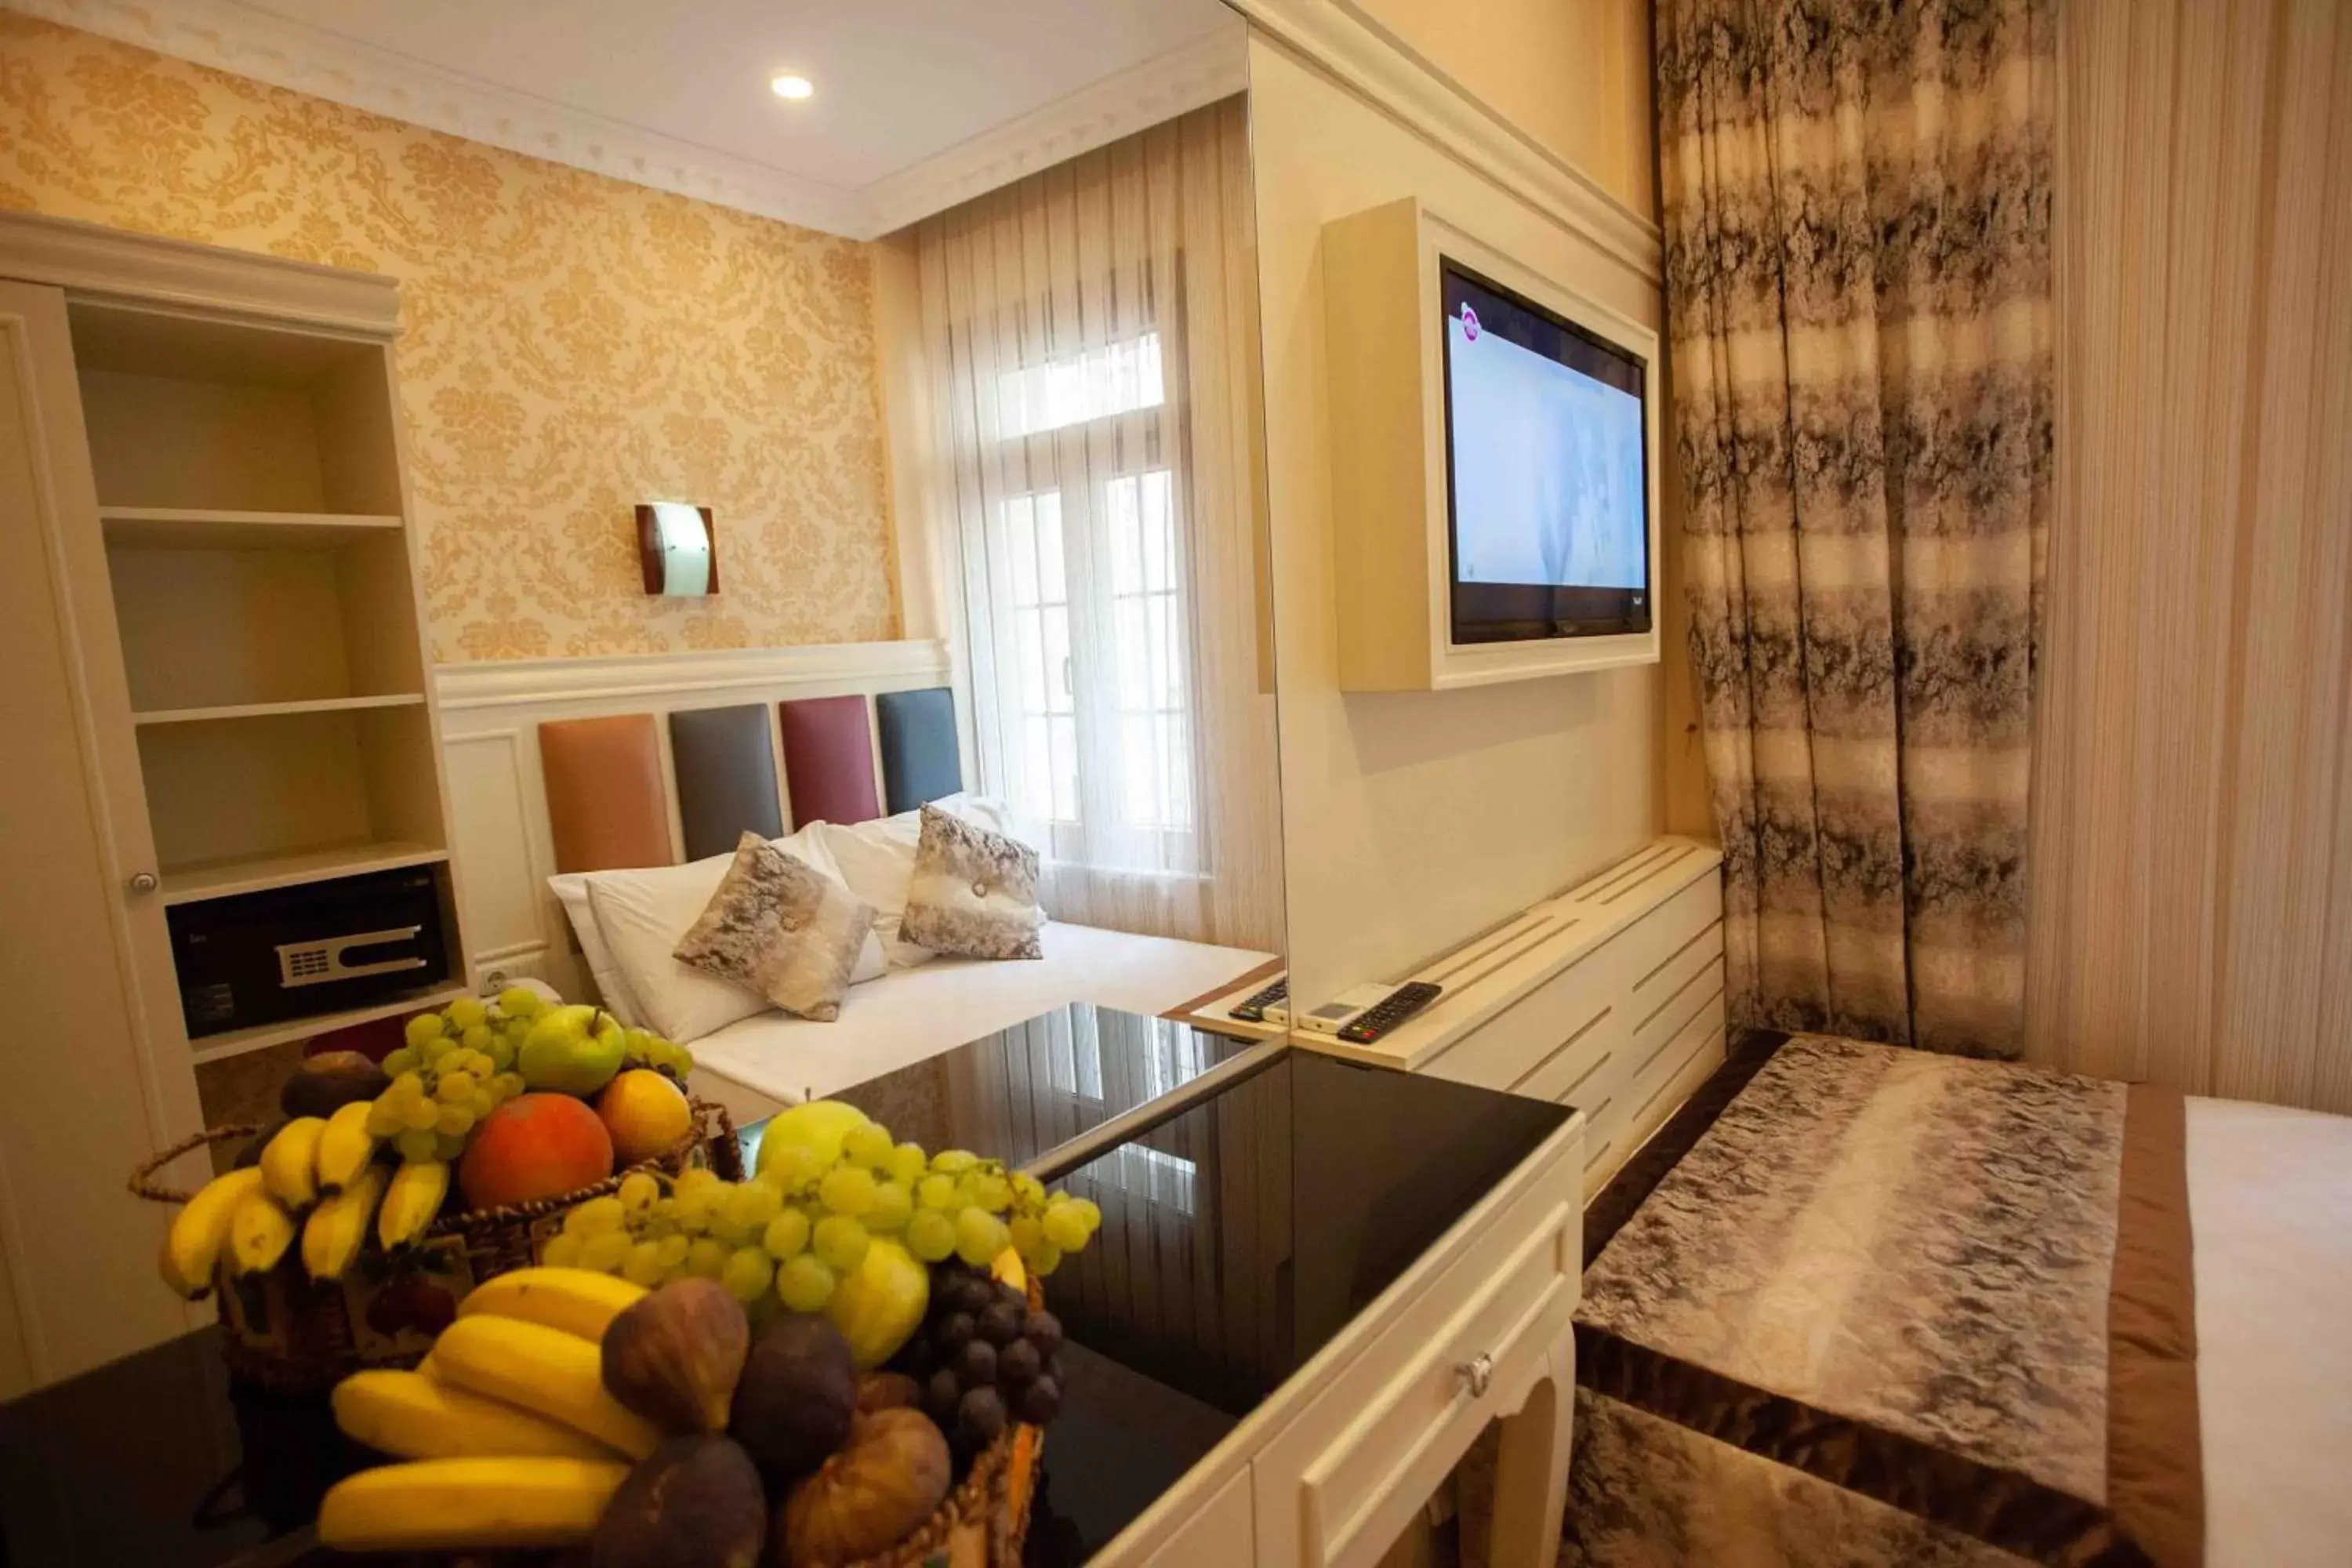 Bed in Best Nobel Hotel